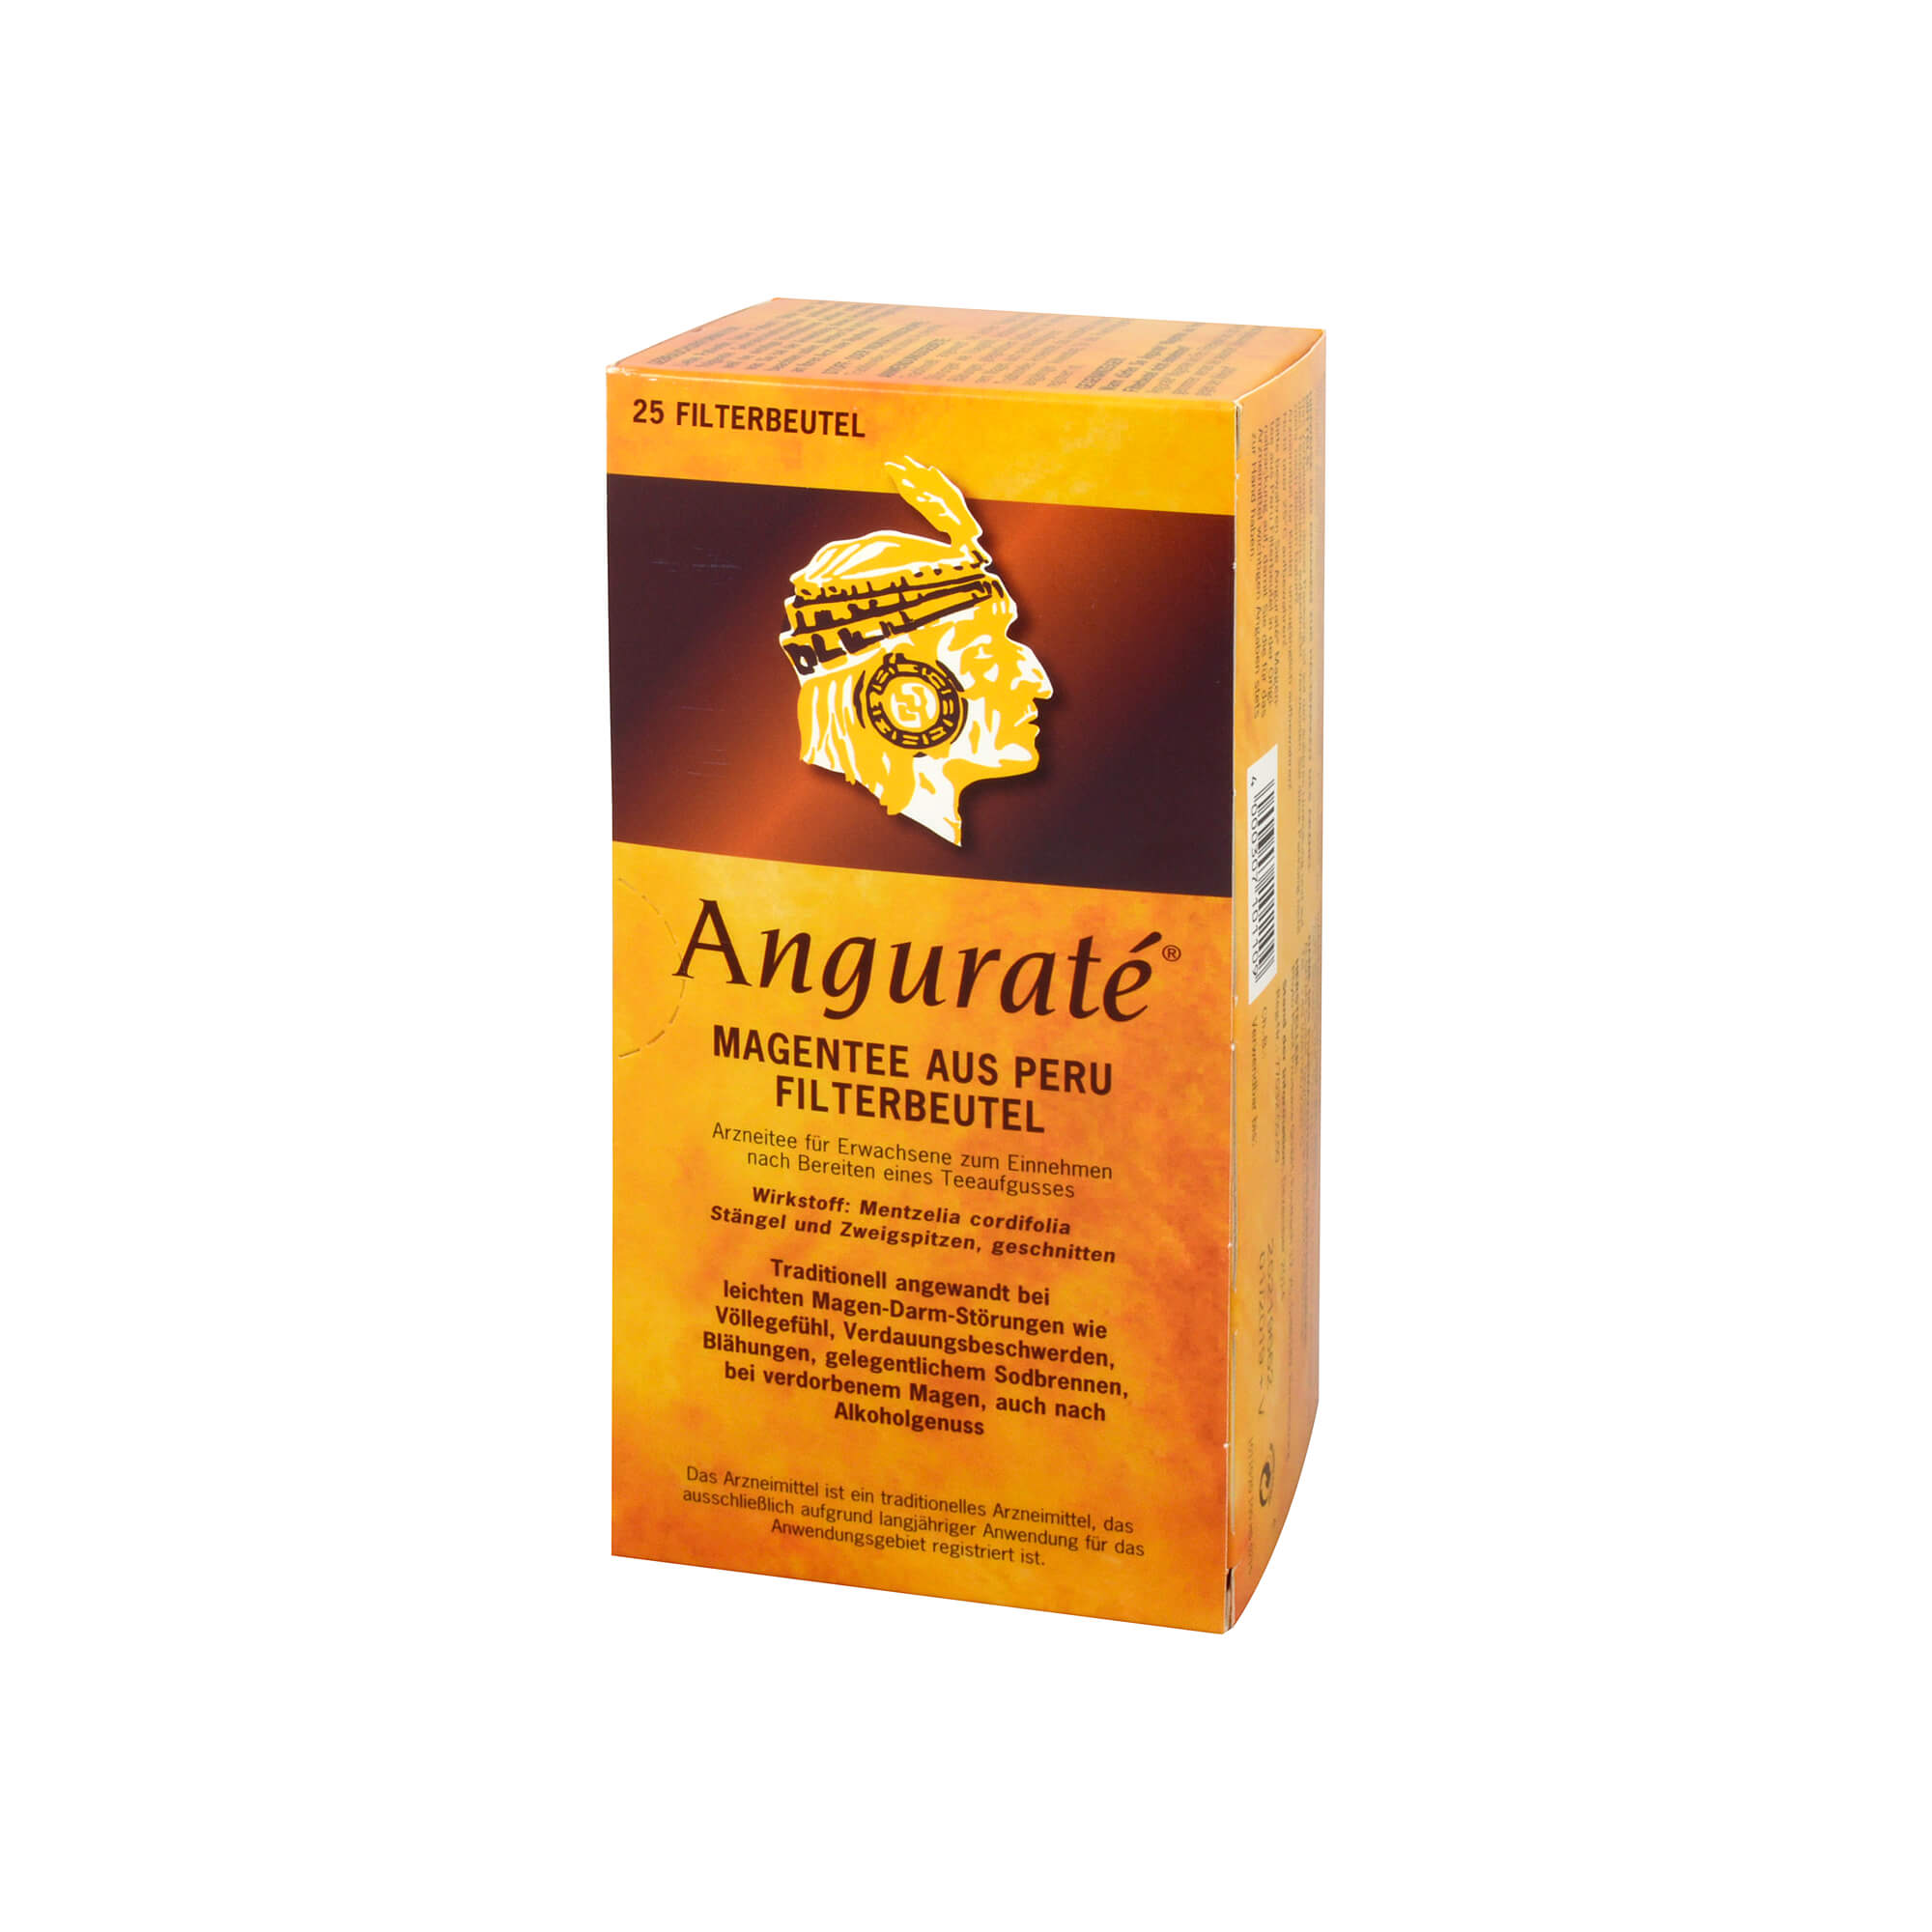 ANGURATE Magentee Filterbeutel. Traditionell angewendet zur Unterstützung der Magen-Darm Funktion.